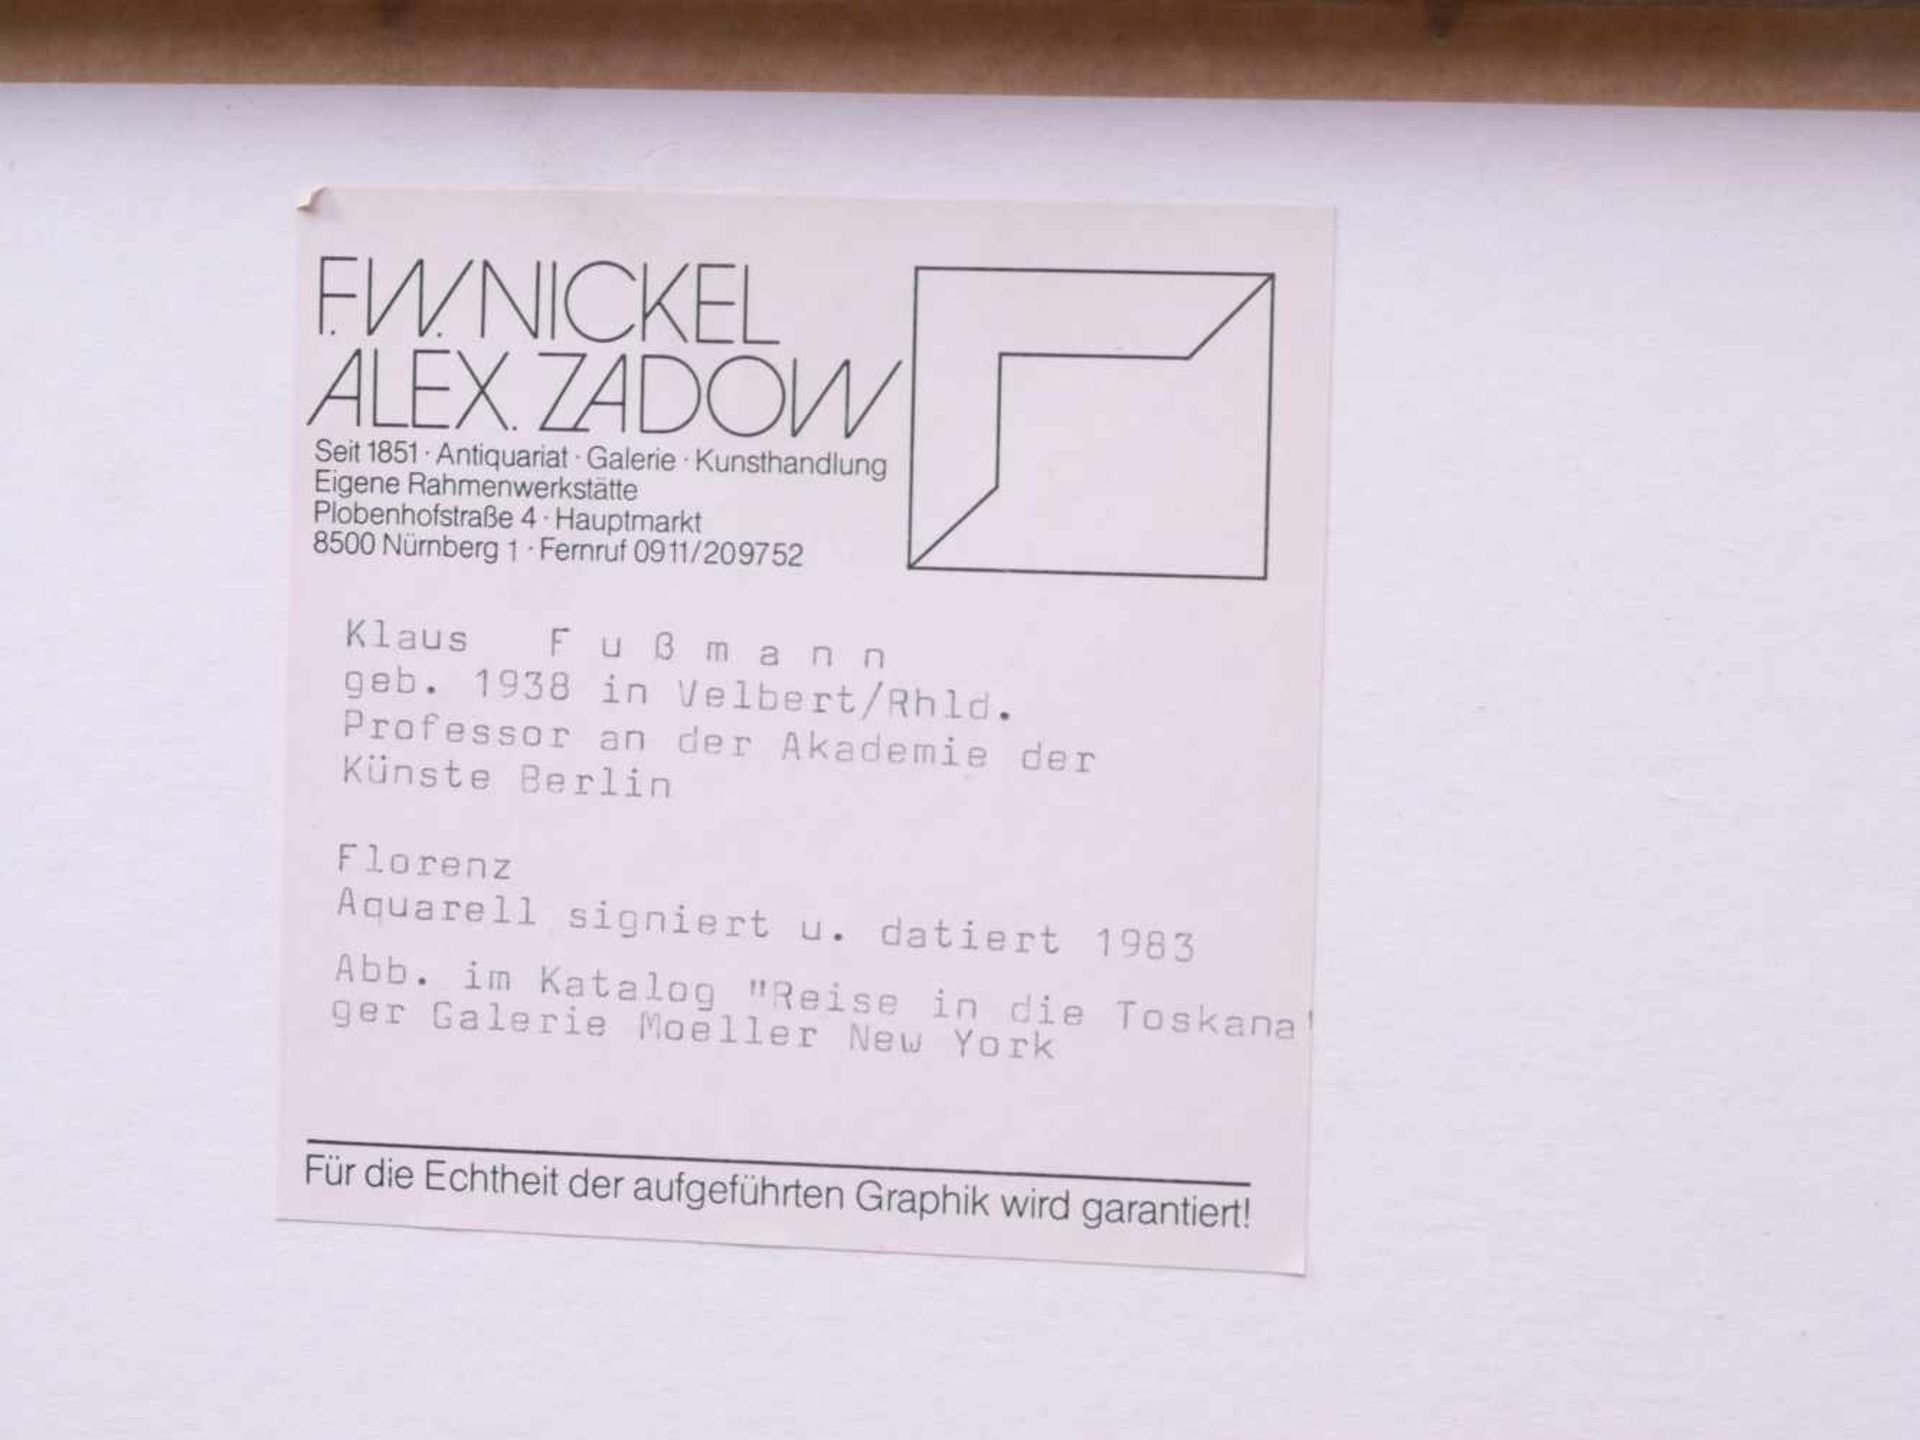 Fußmann, Klaus (1938) - Florenz Aquarell 1983Seltene Landschaftsdarstellung des Künstlers. Florenz - Bild 5 aus 5